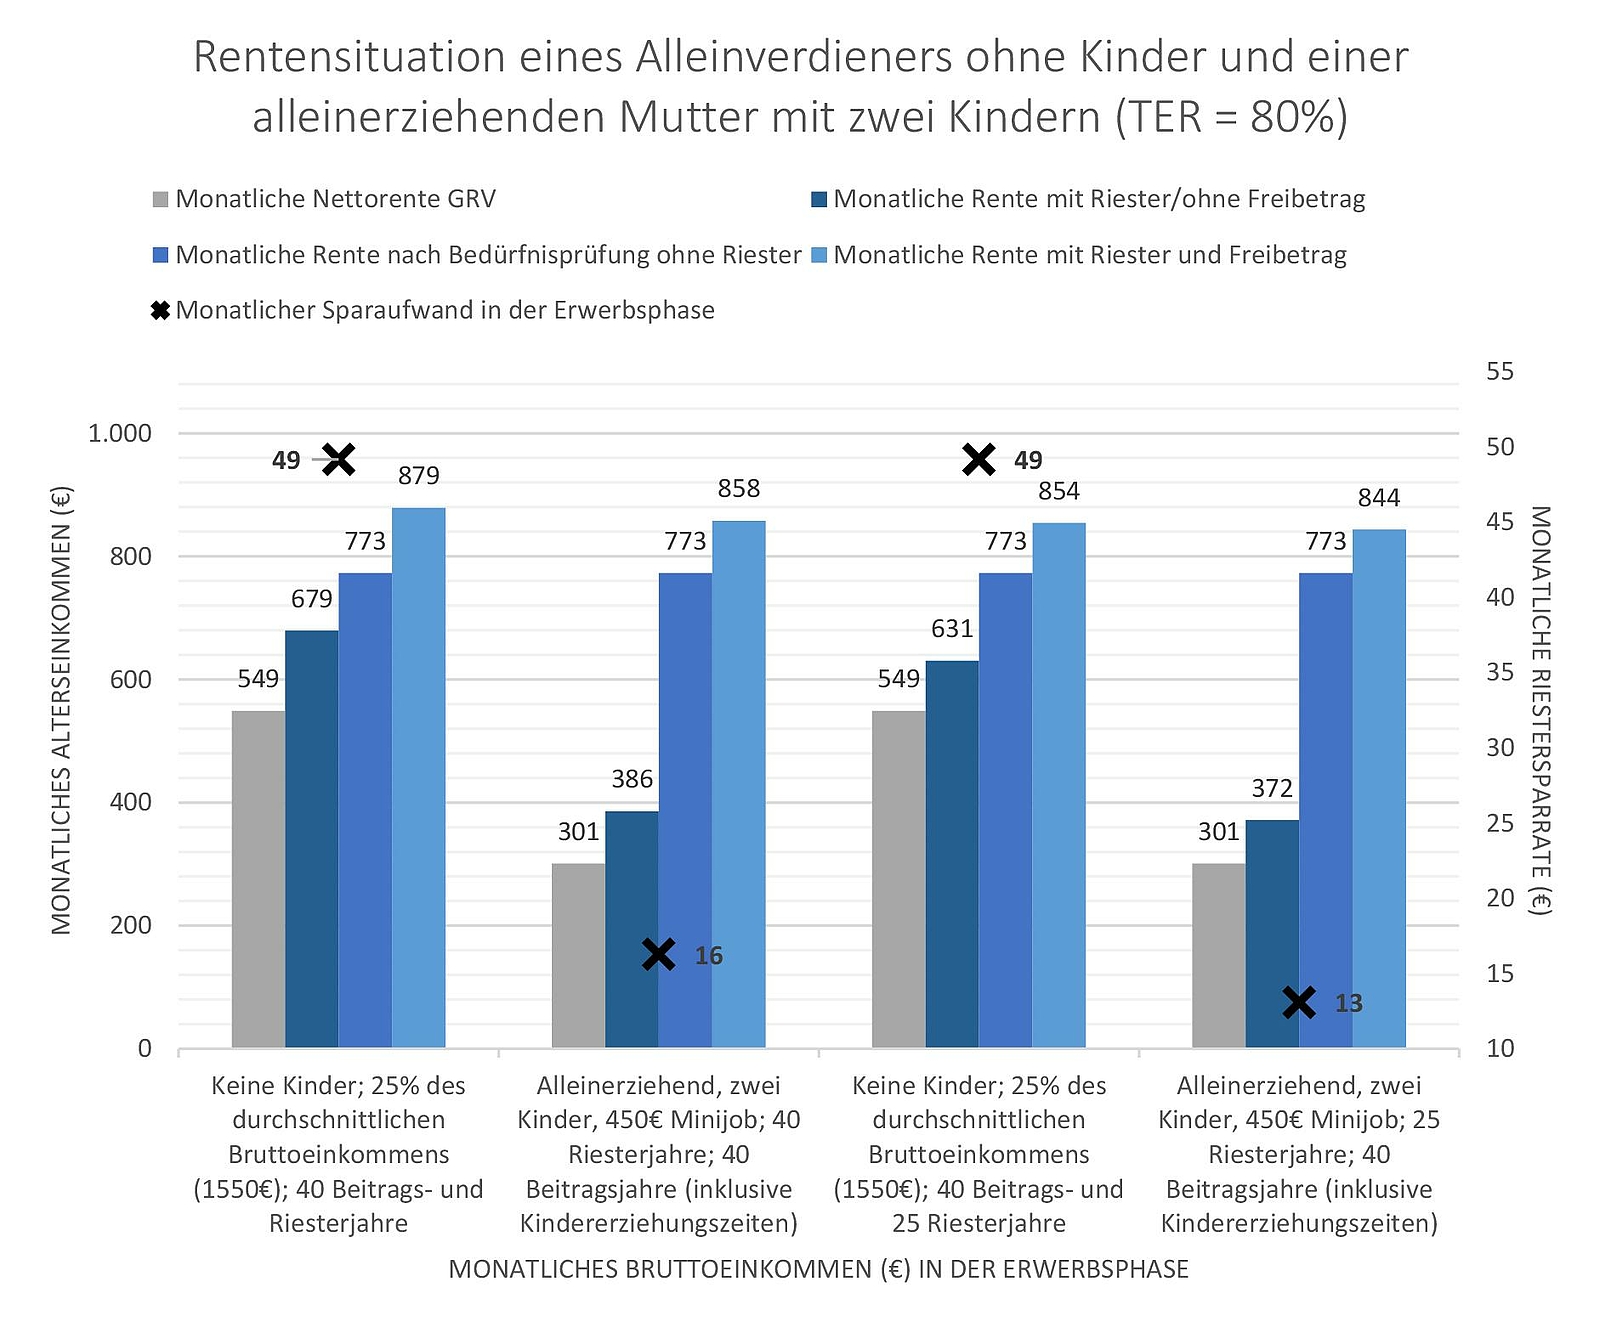 Abbildung 3: Rentenvergleich mit und ohne Kinder nach Riesterjahren